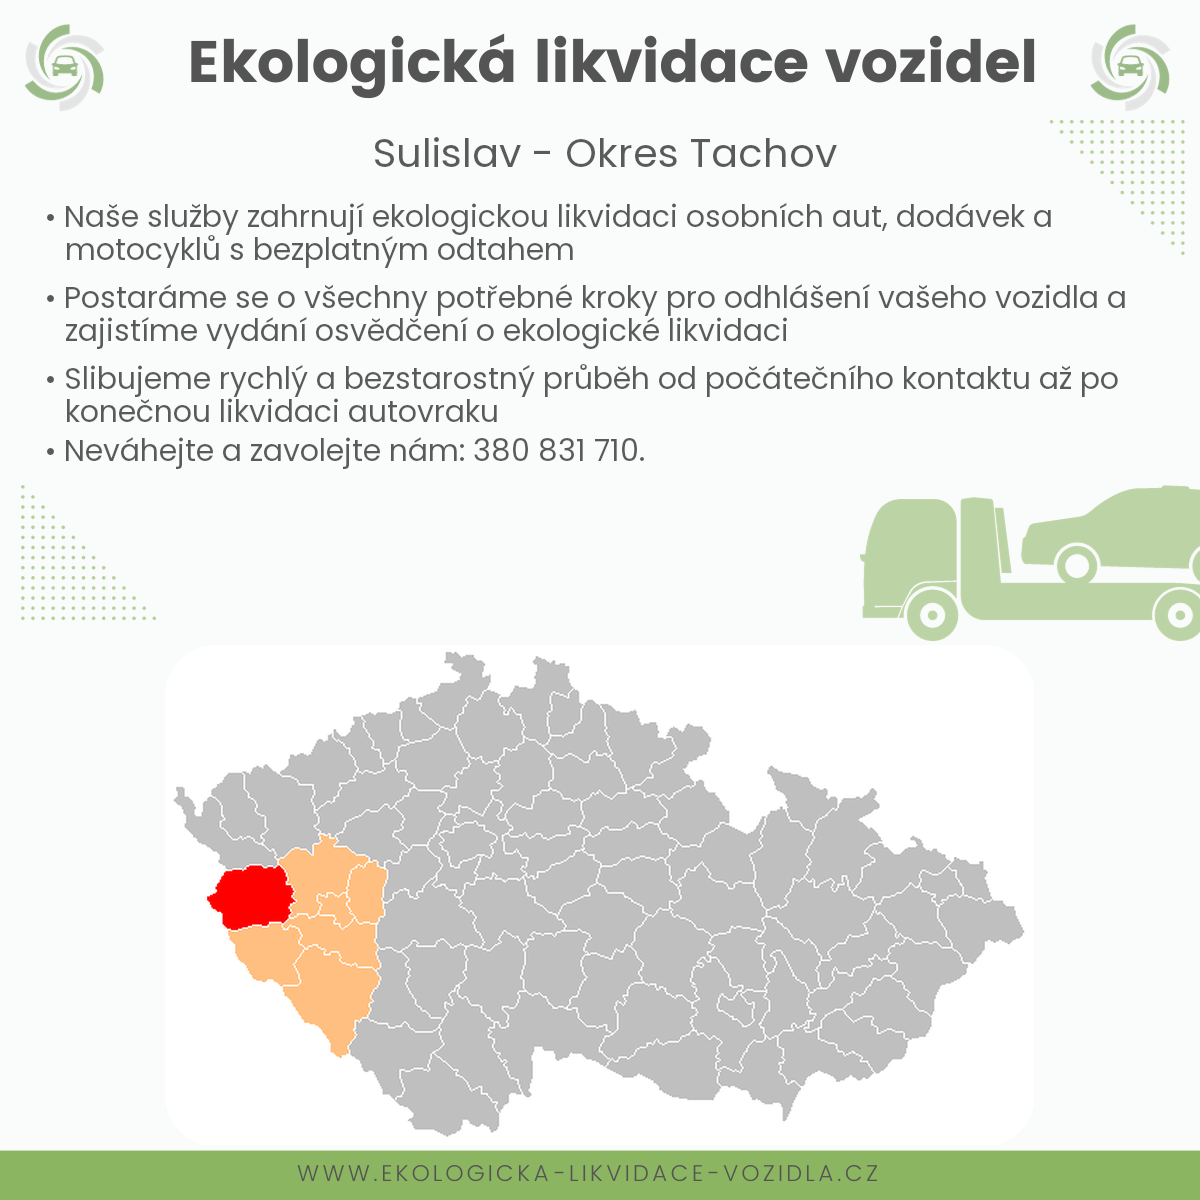 likvidace vozidel - Sulislav